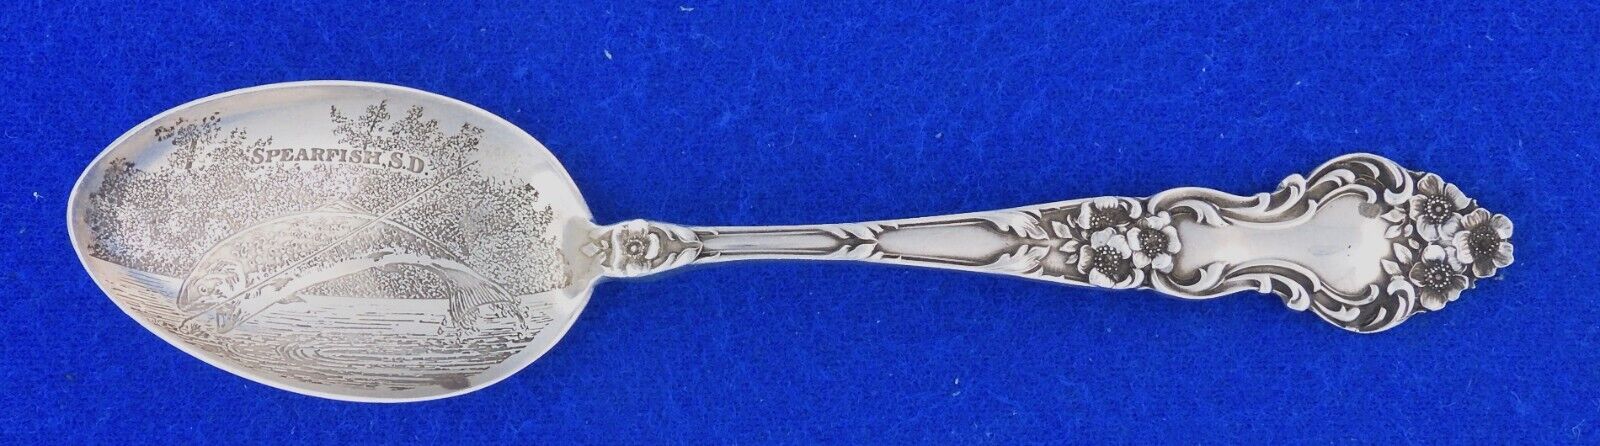 Spearfish South Dakota Trout Fish Sterling Silver Souvenir Spoon 5\